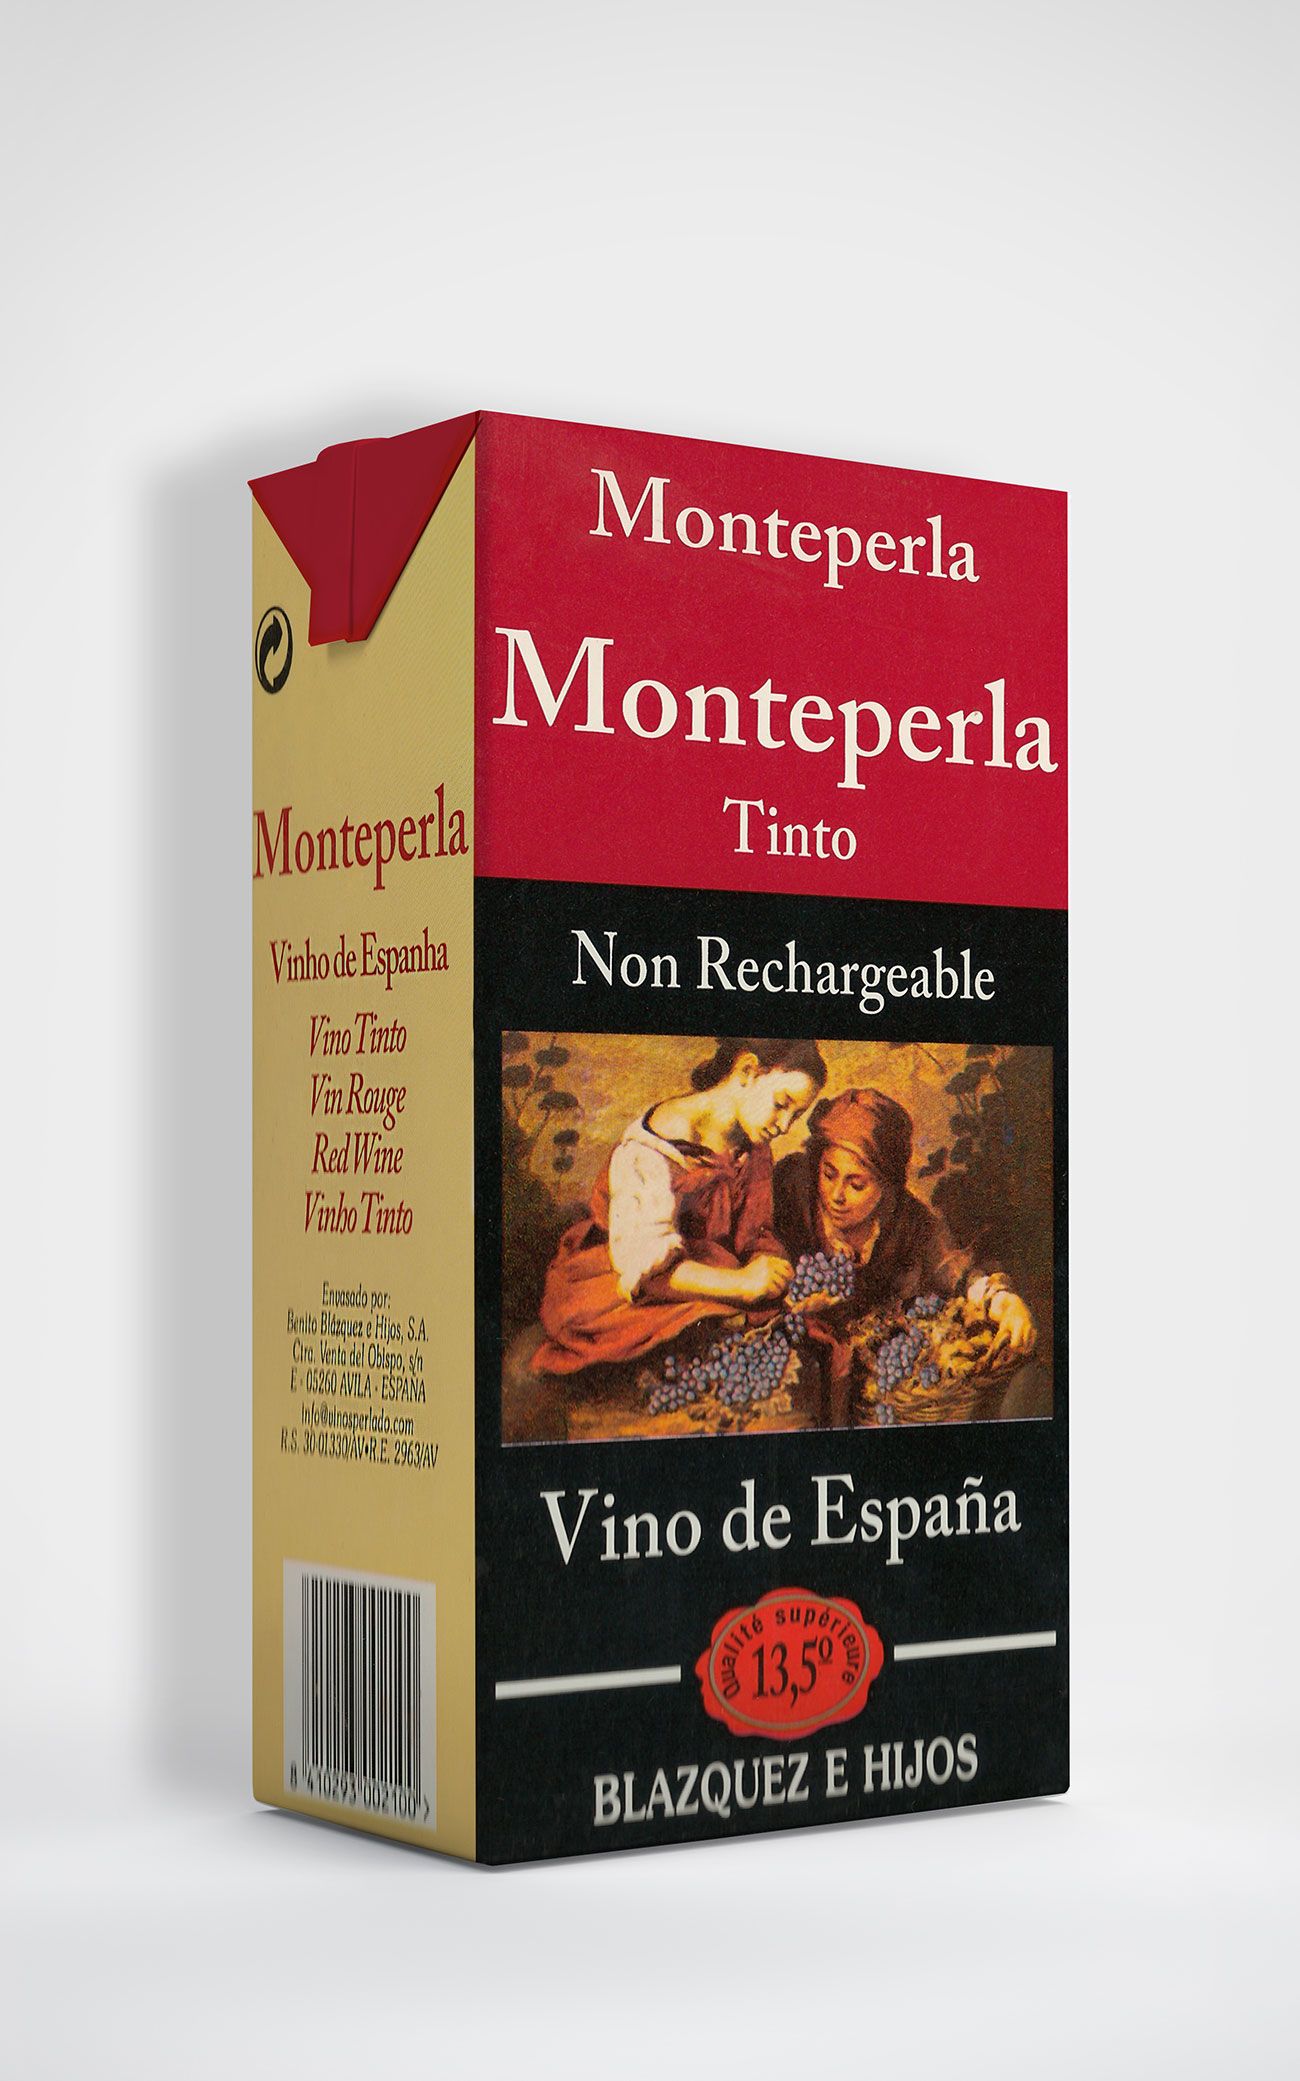 Benito Blázquez - Brik de Vino Monteperla Tinto